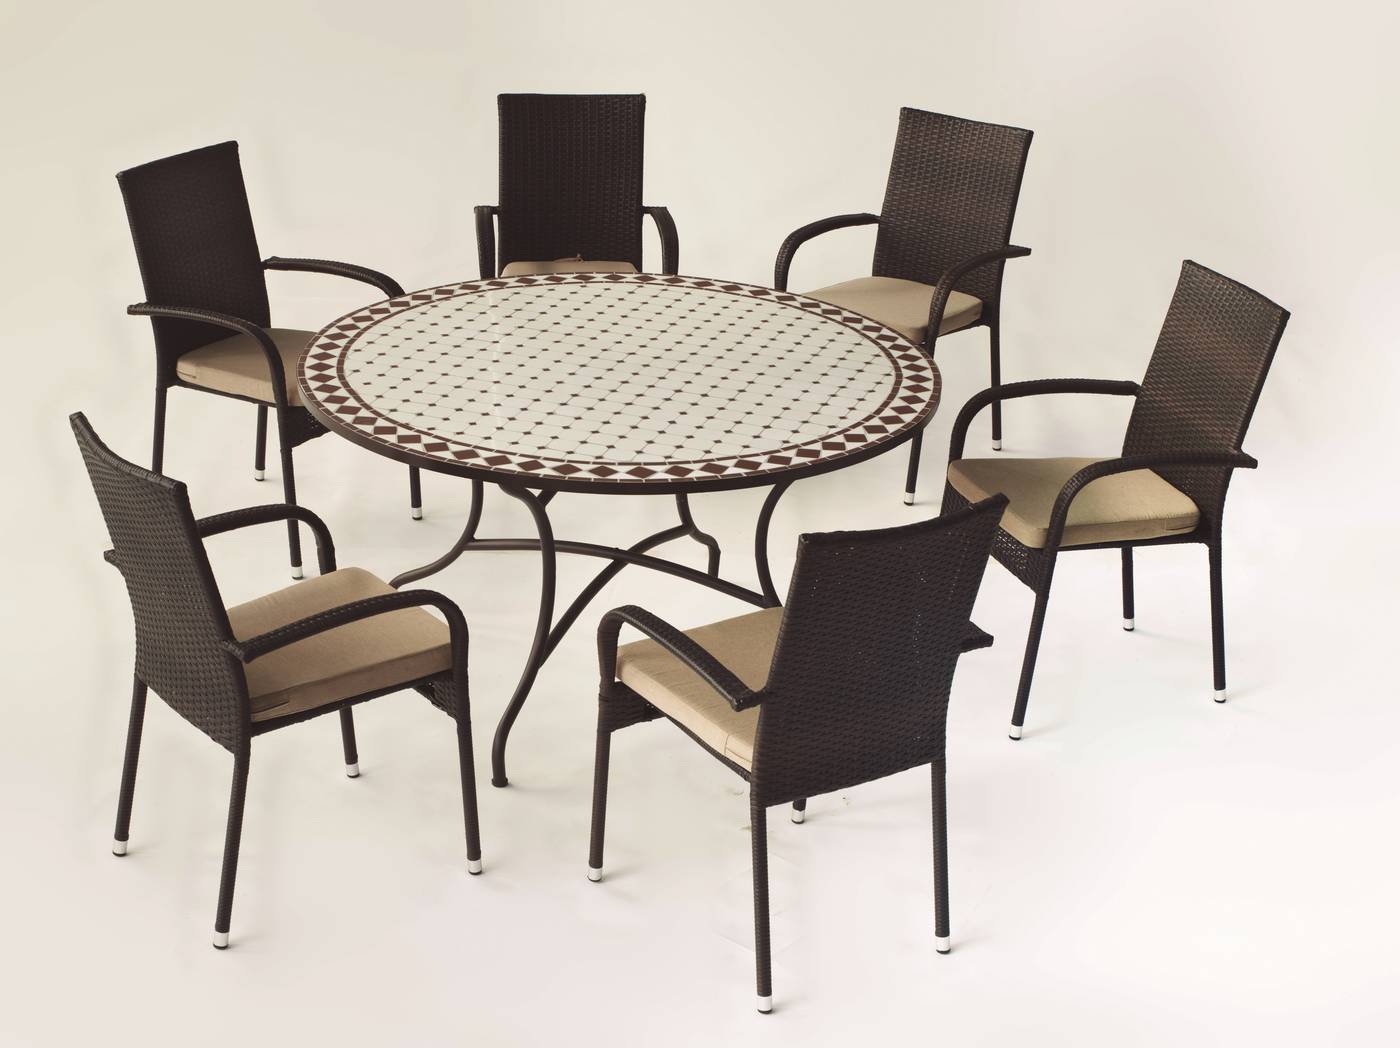 Conjunto de forja color marrón: mesa con tablero mosaico de 140 cm + 6 sillones de ratán sintético con cojines.